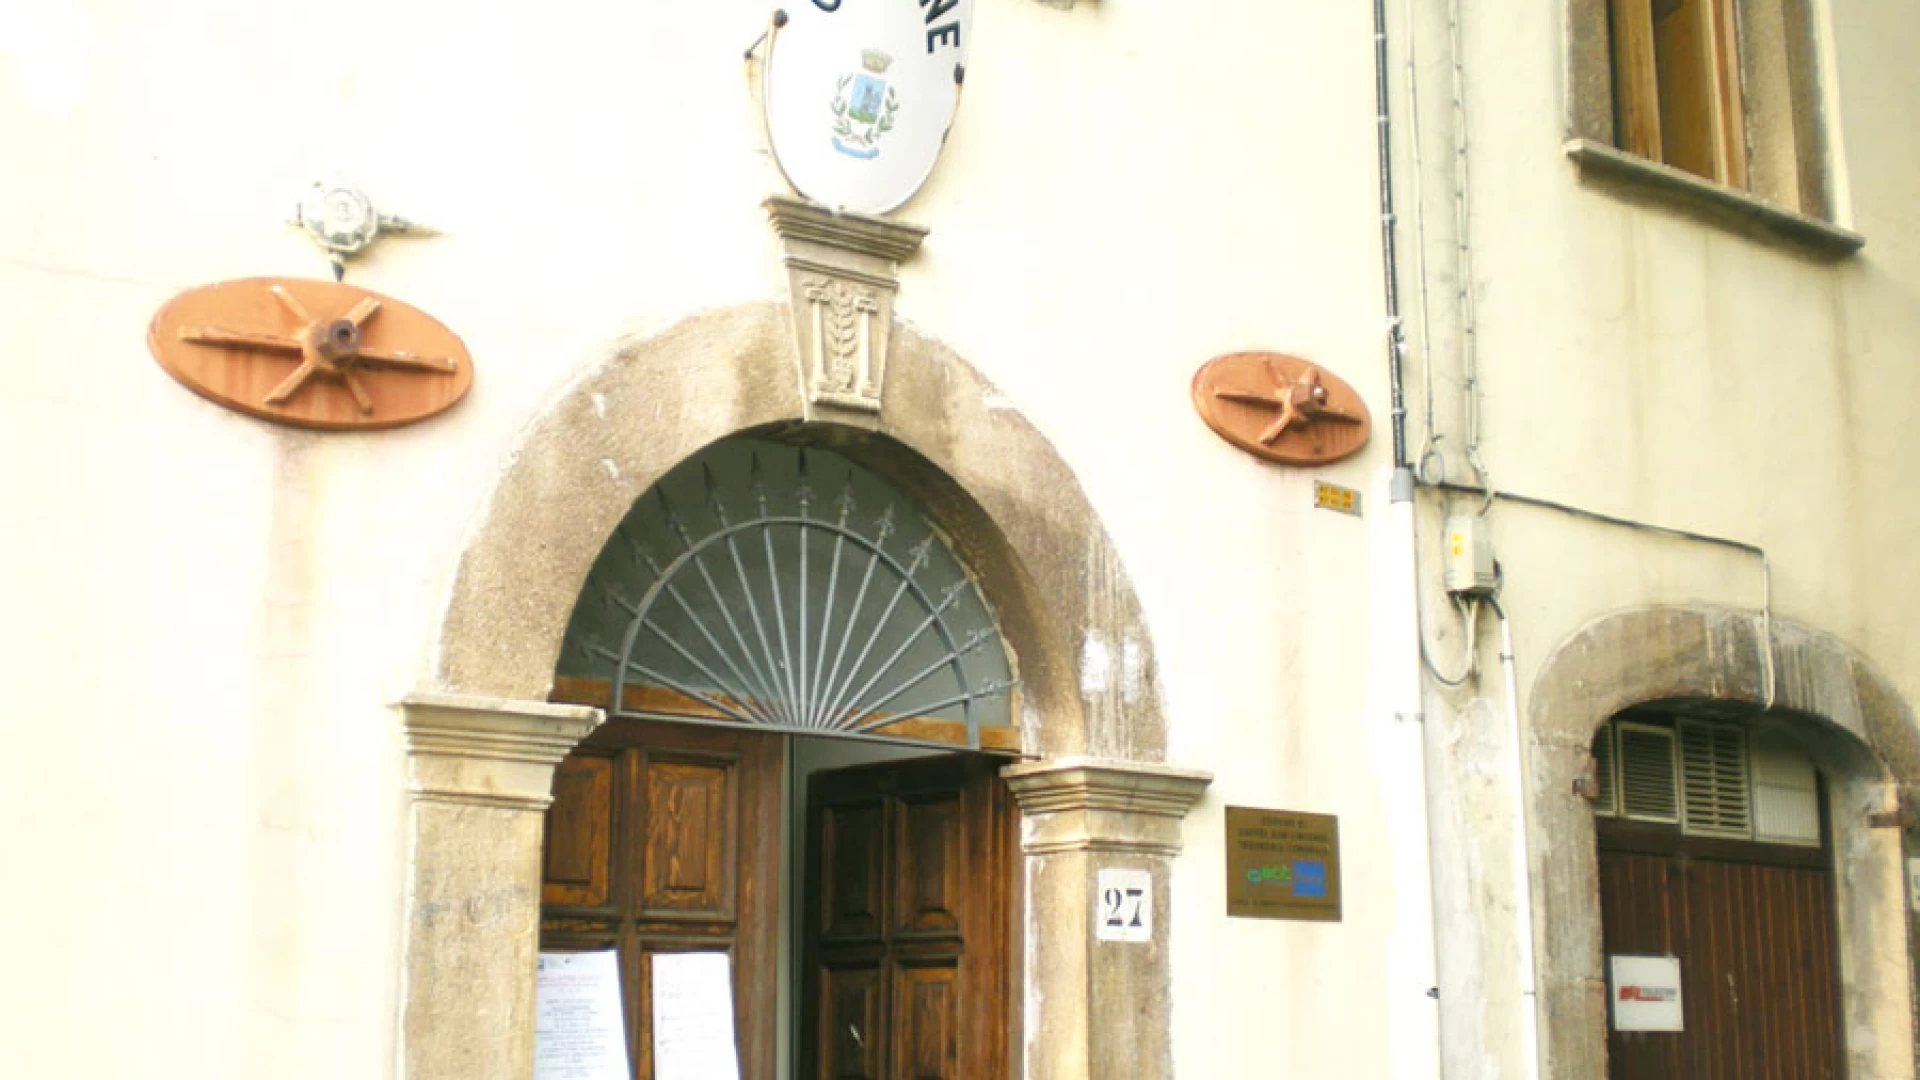 Castel San Vincenzo: misure di contrasto al Coronavirus, disposta dal Comune la sanificazione delle vie comunali per lunedì 23 marzo, dalle ore 21.00.